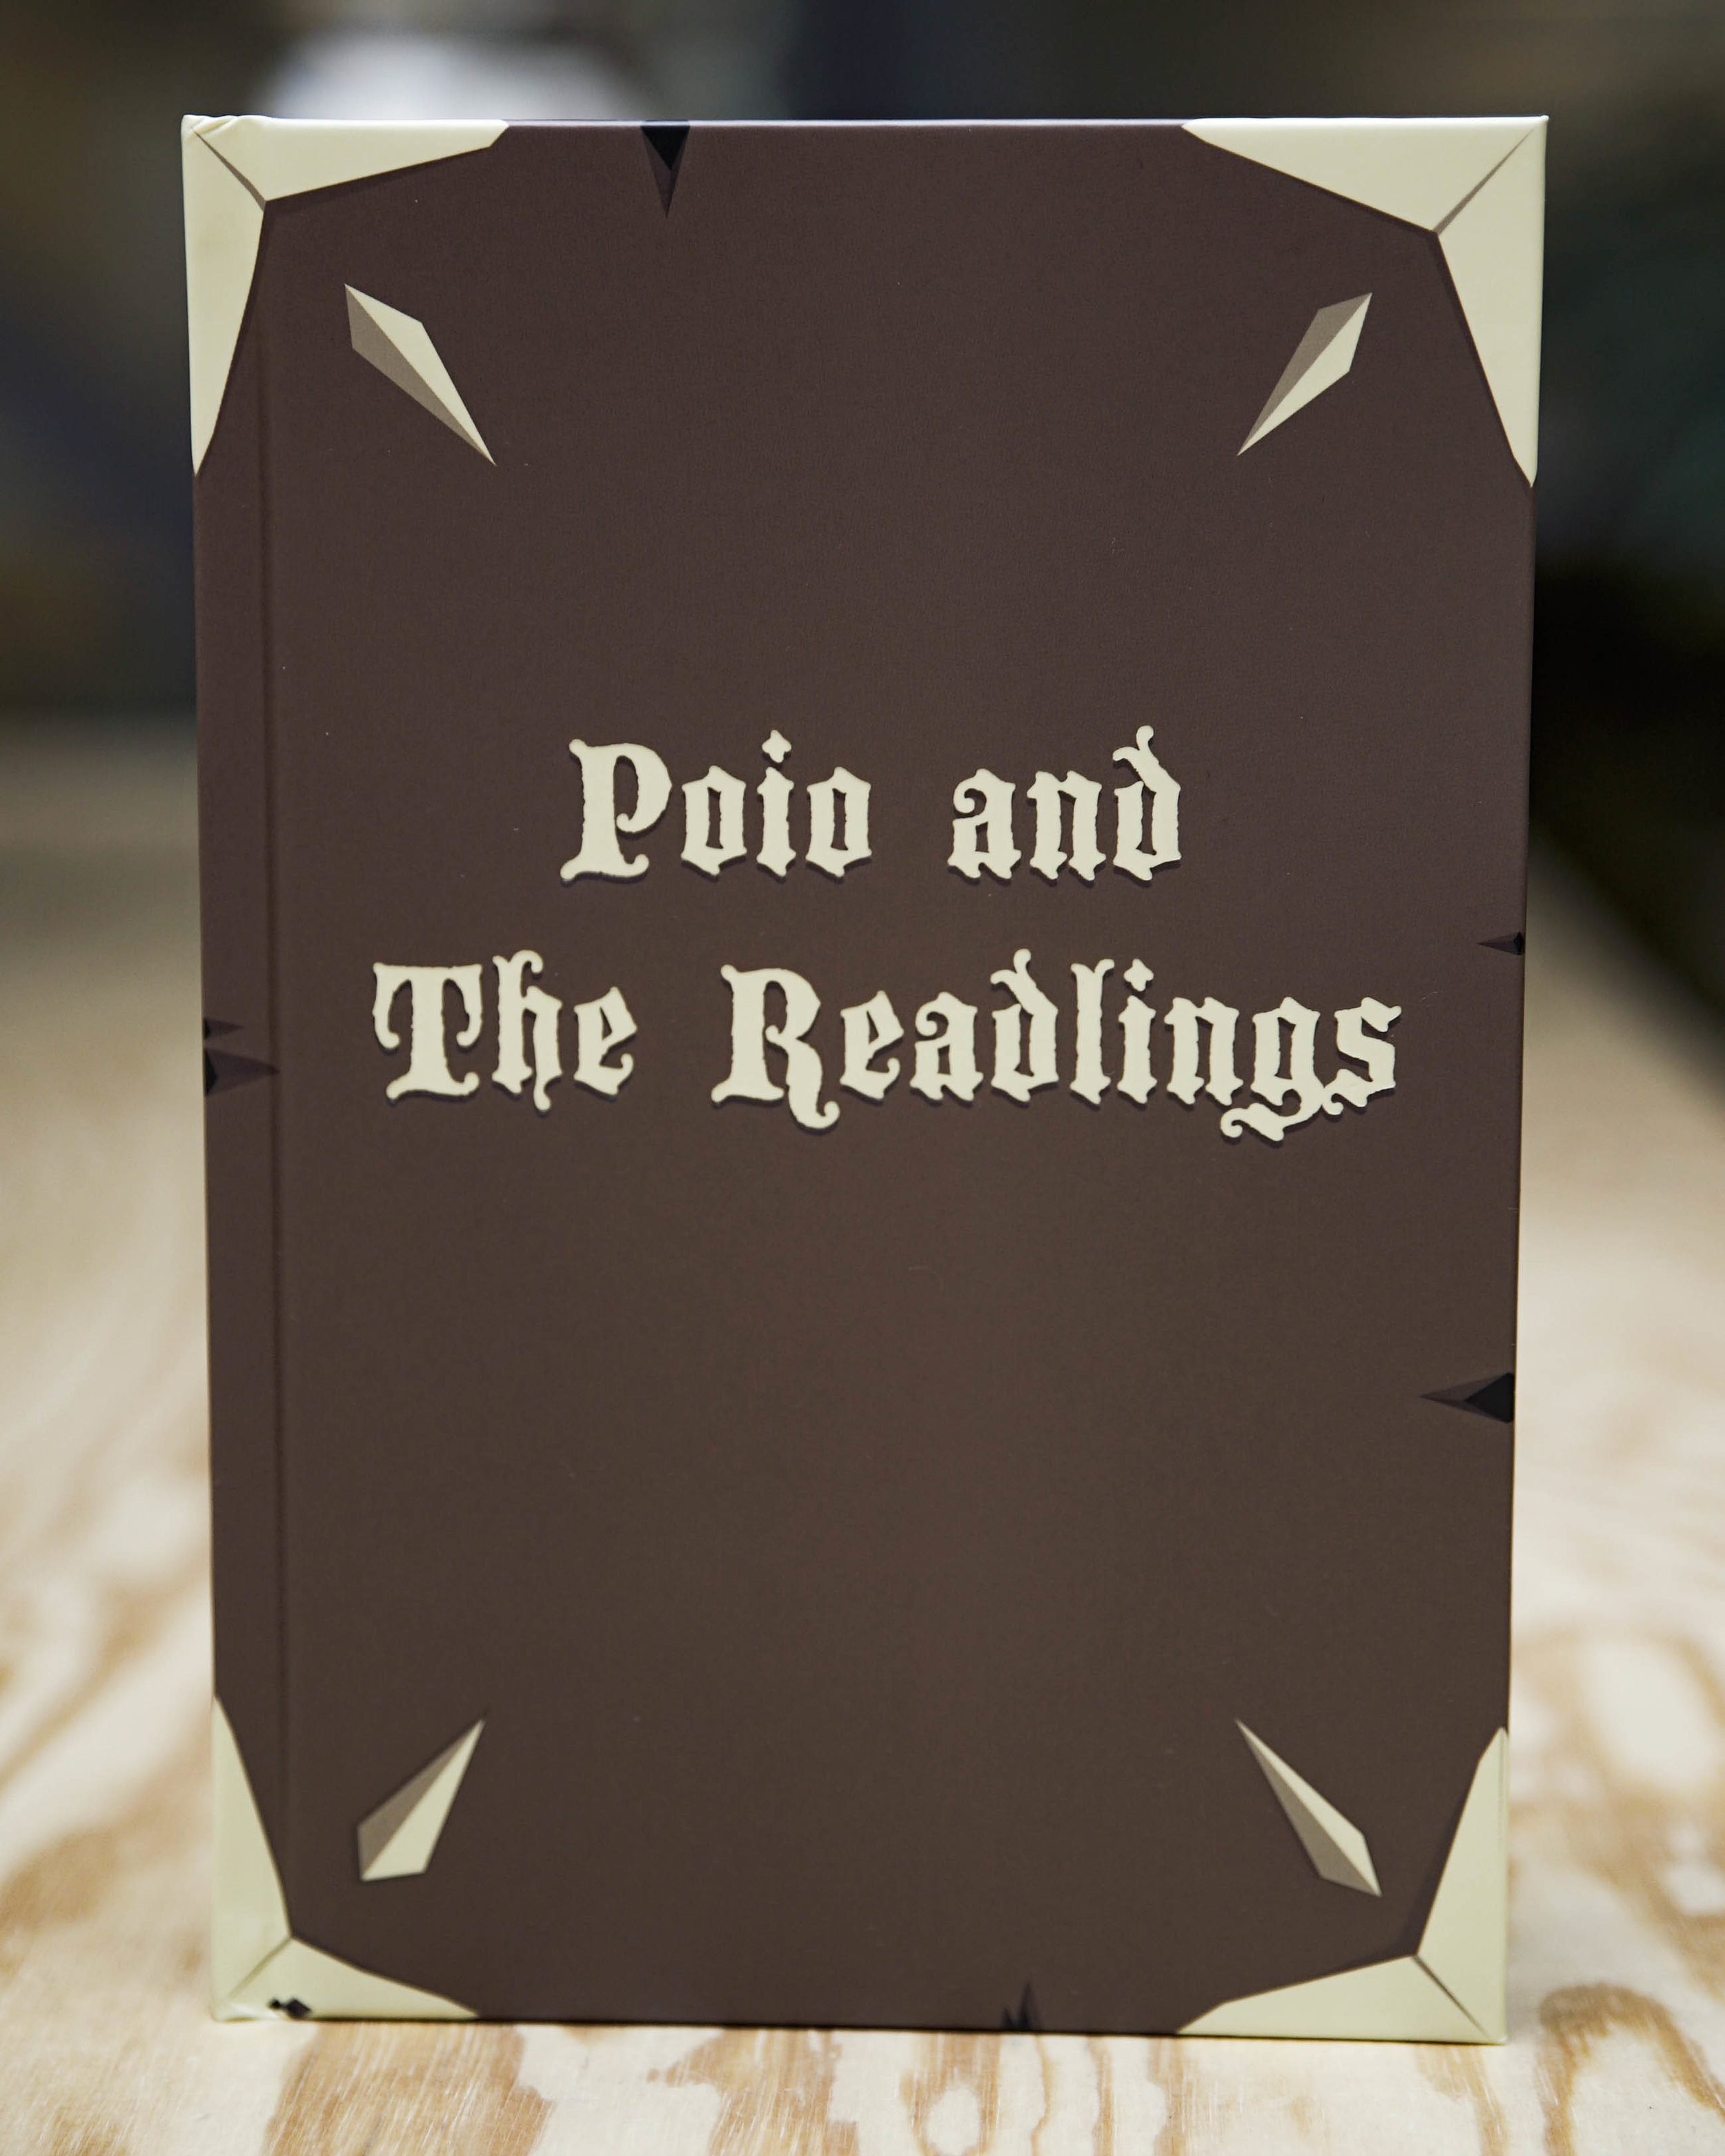 Order the book — Poio